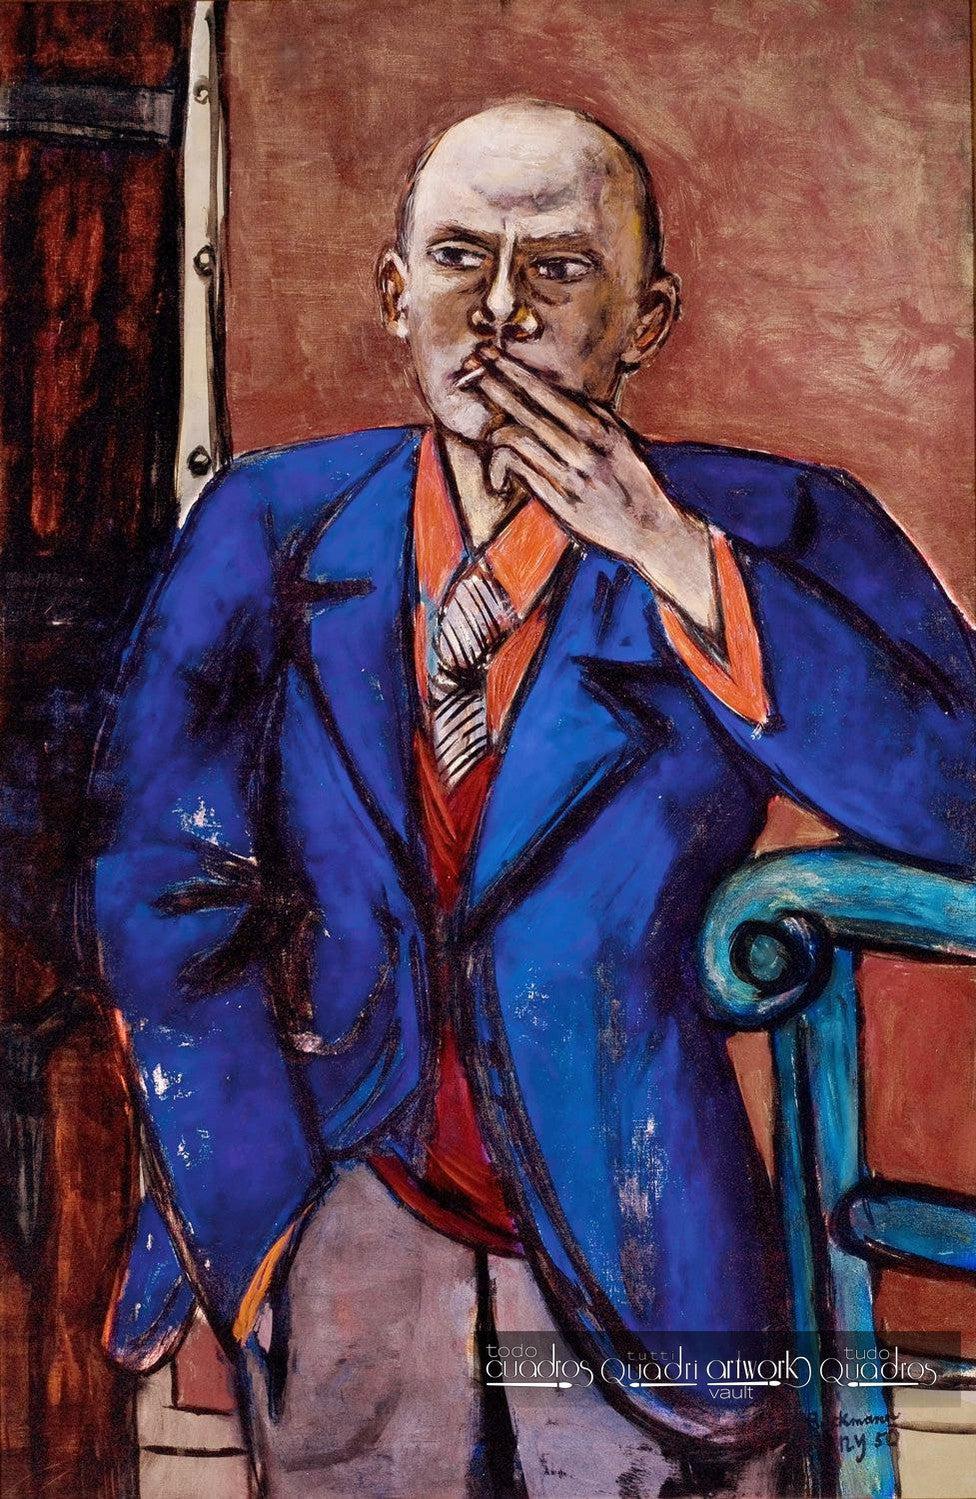 Self-Portrait in Blue Jacket, Max Beckmann